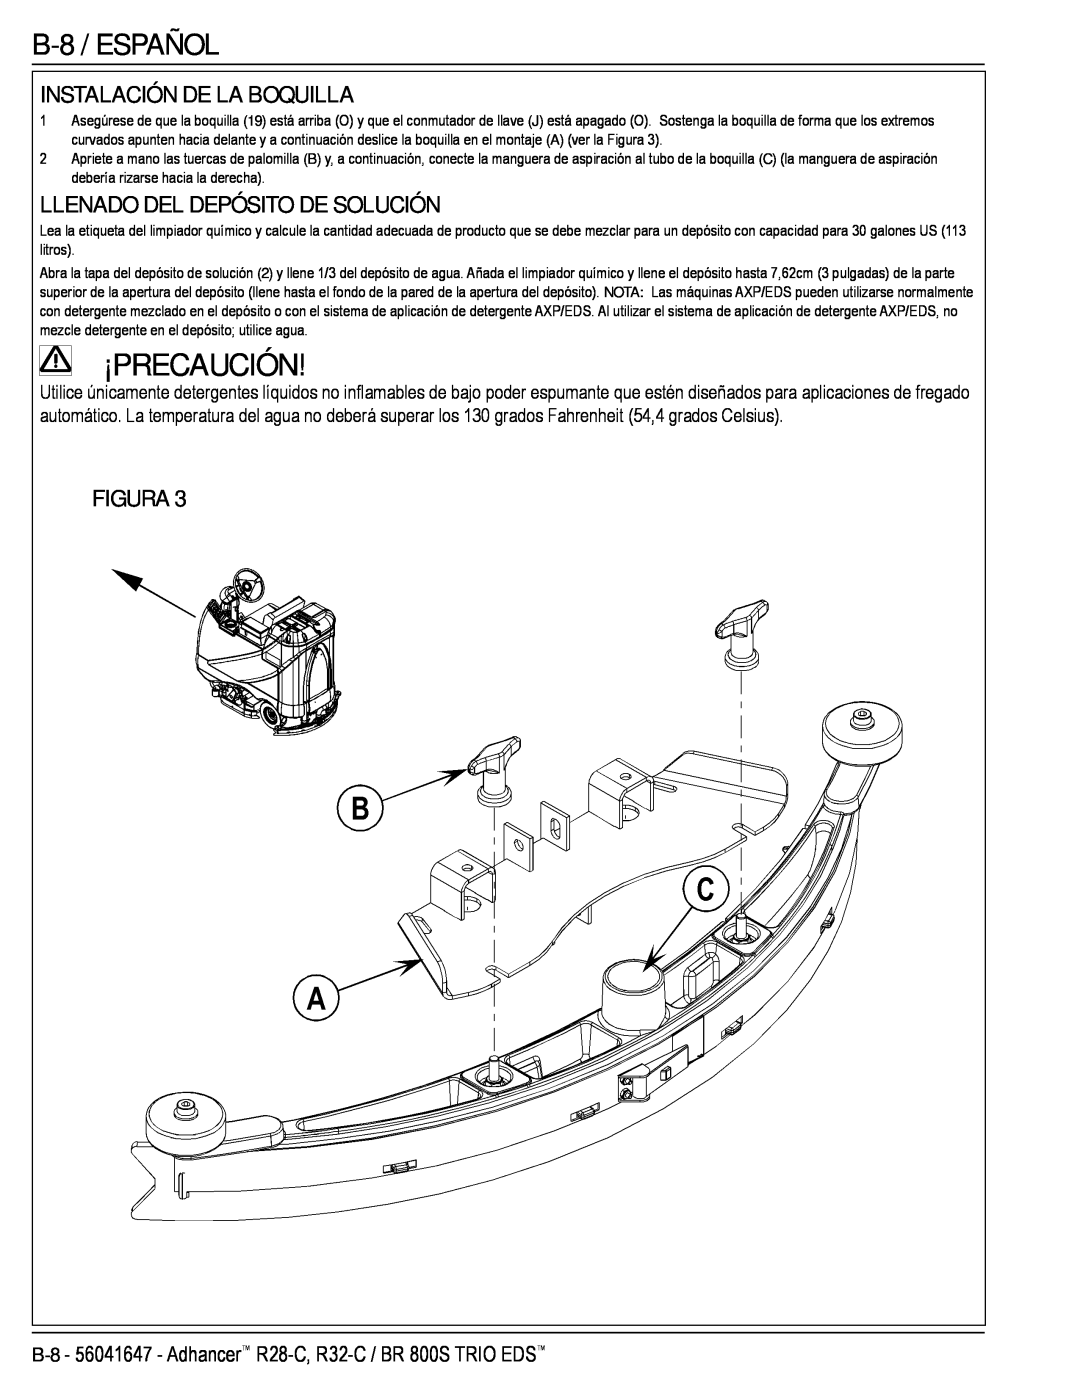 Nilfisk-Advance America 56316026 (R32-C) manual B-8 /ESPAÑOL, Instalación De La Boquilla, Llenado Del Depósito De Solución 